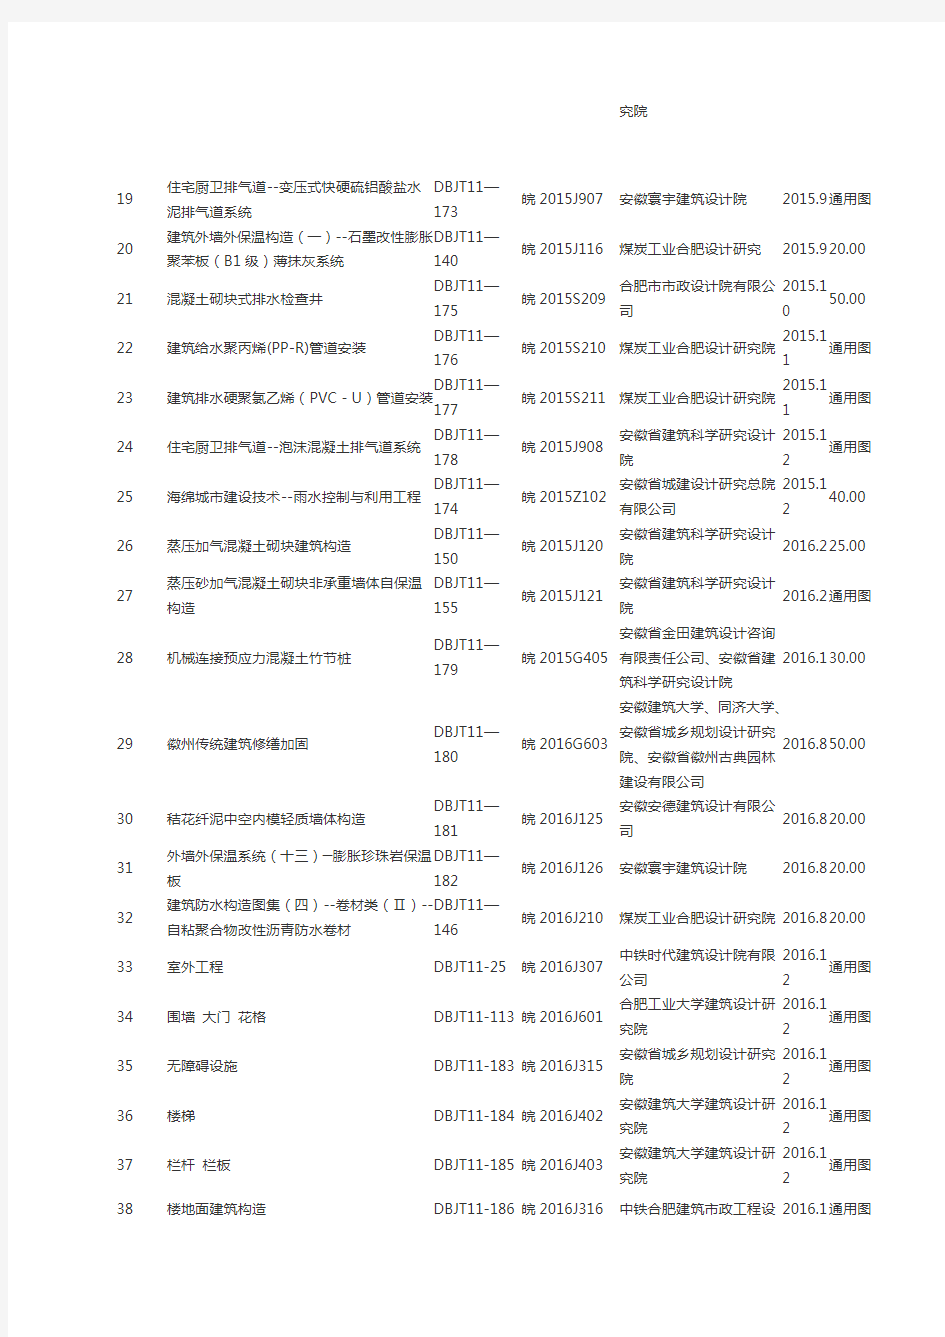 安徽省现行标准设计图集目录 (2017.1)